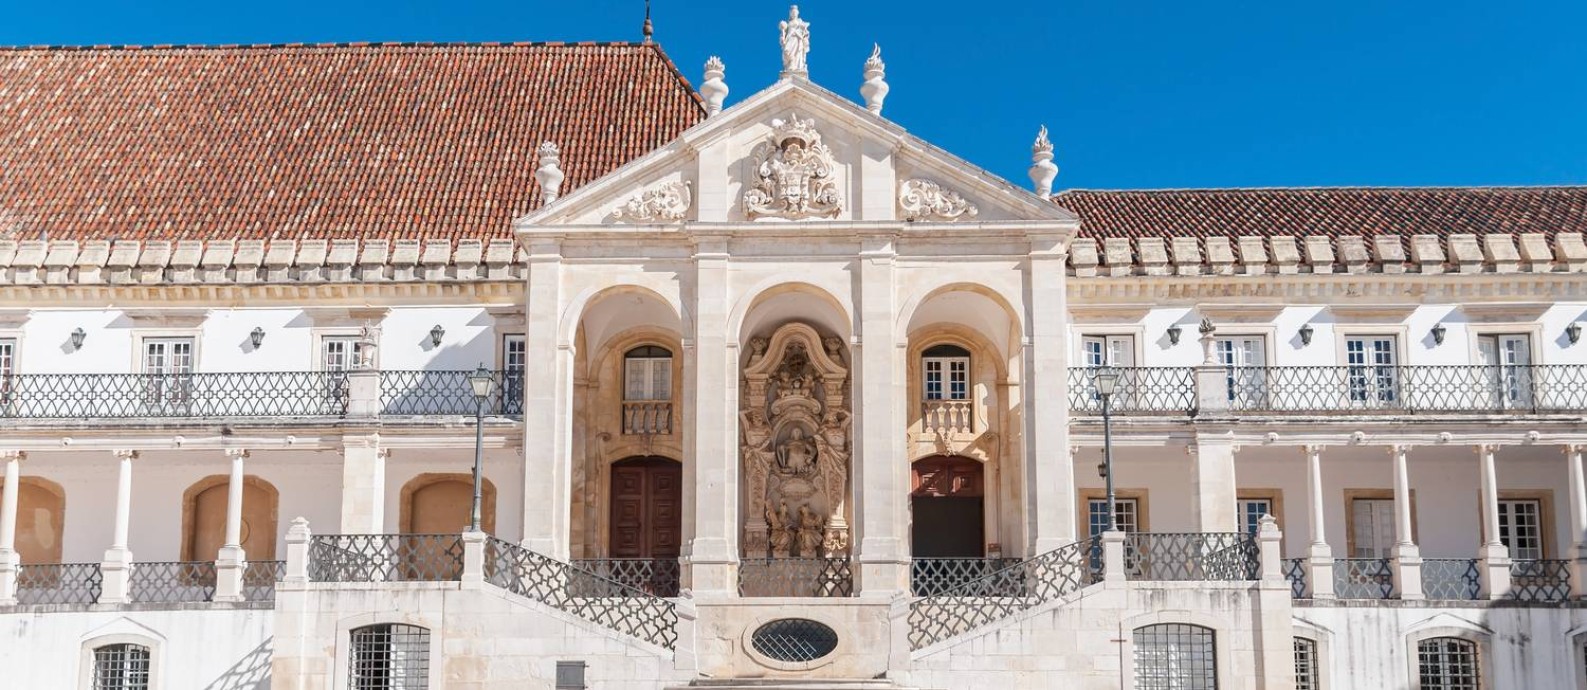 Com 728 anos de história e atmosfera multicultural, a Universidade de Coimbra proporciona uma experiência acadêmica rica e cosmopolita Foto: Thinkstock Photos